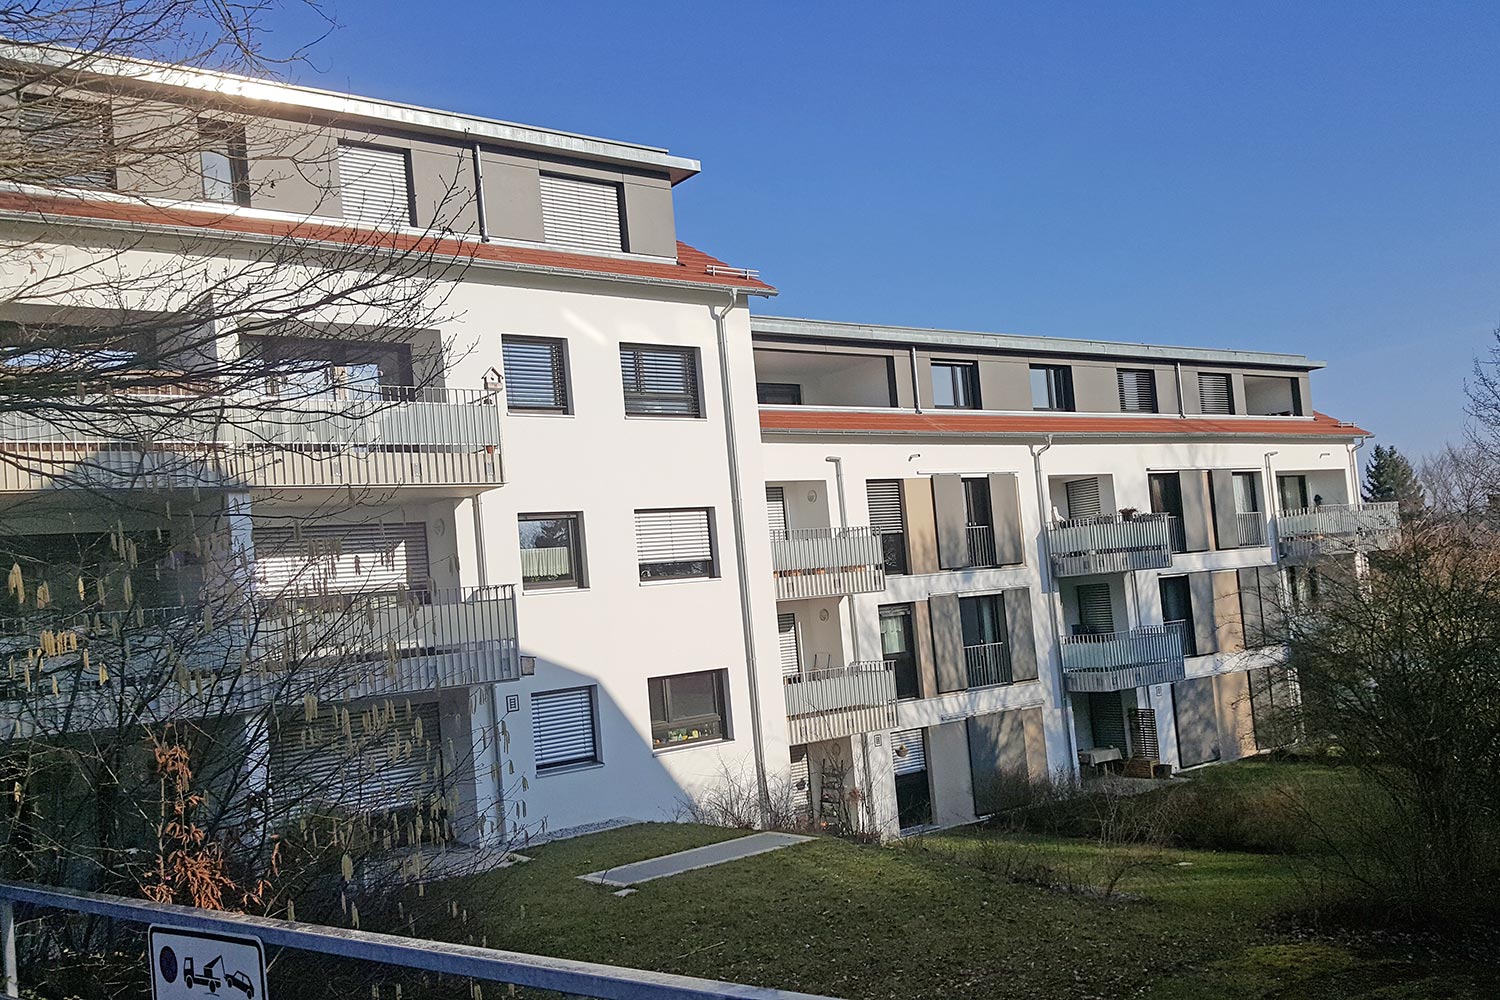 Holzrahmenbau | LEINS HOLZBAU in Bietenhausen / Rangendingen | Zimmerei und Innenausbau